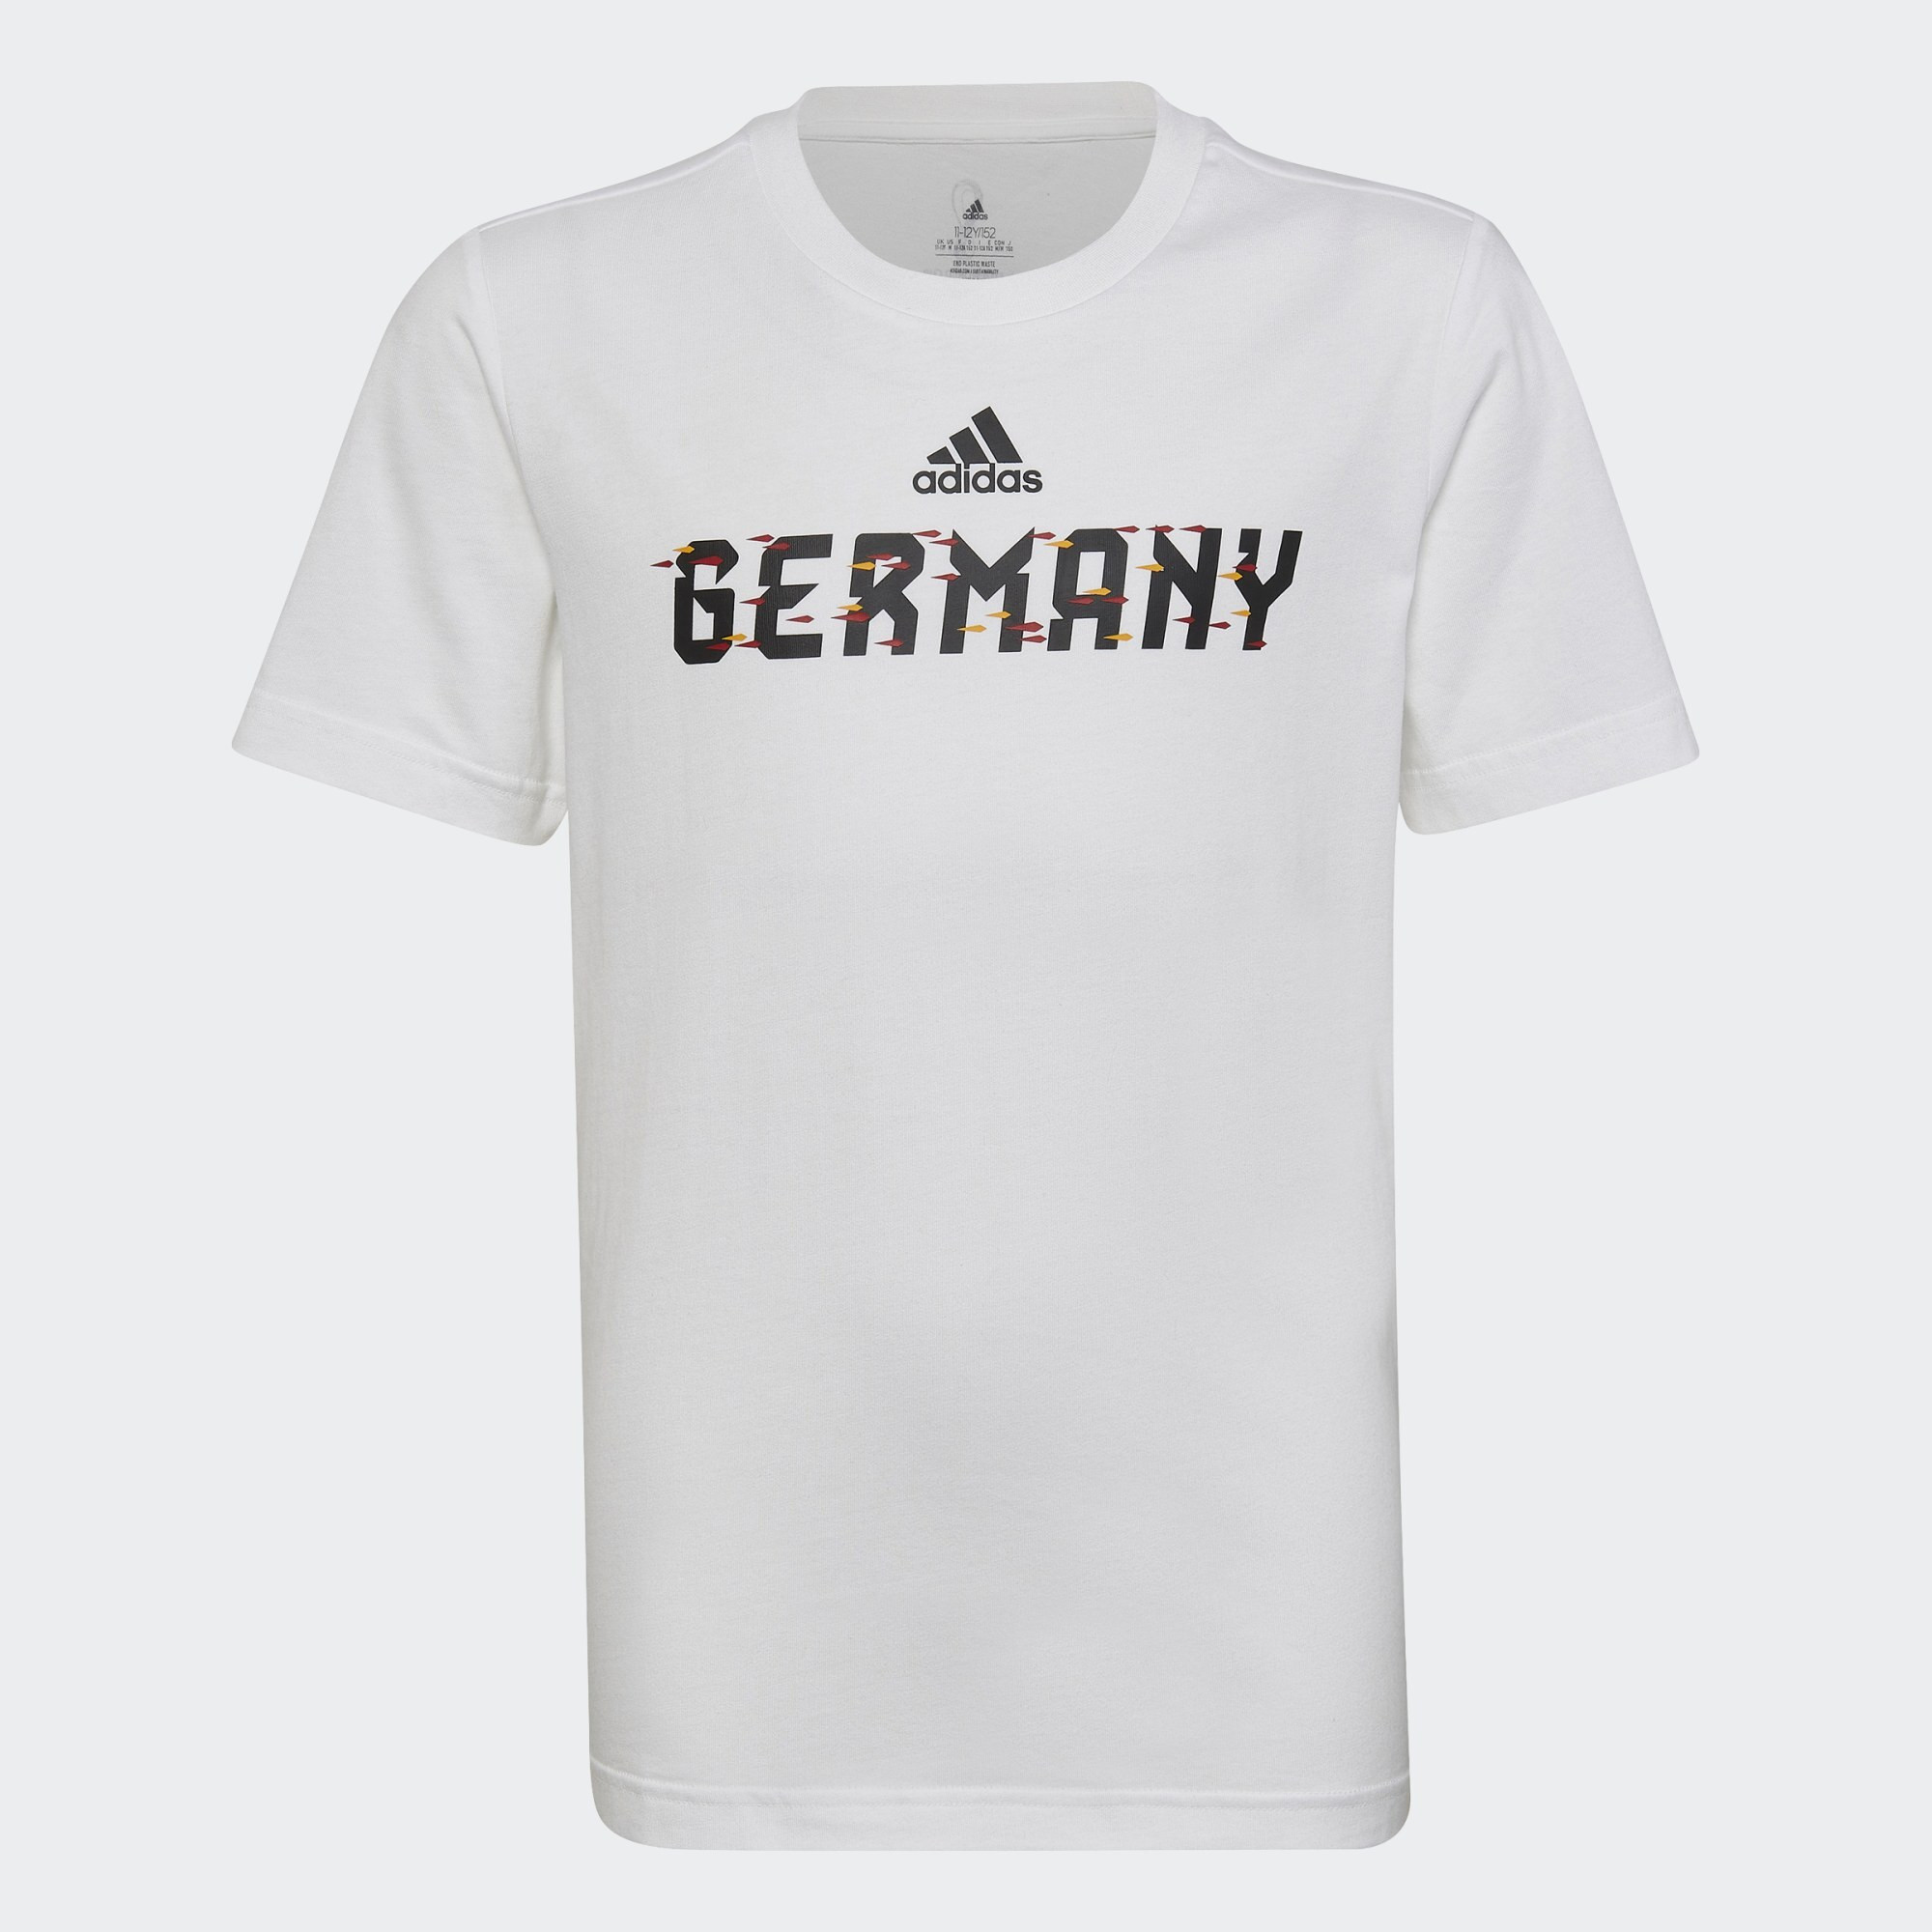 adidas FIFA World Cup 2022™ Germany Tee (9000126906_1539)